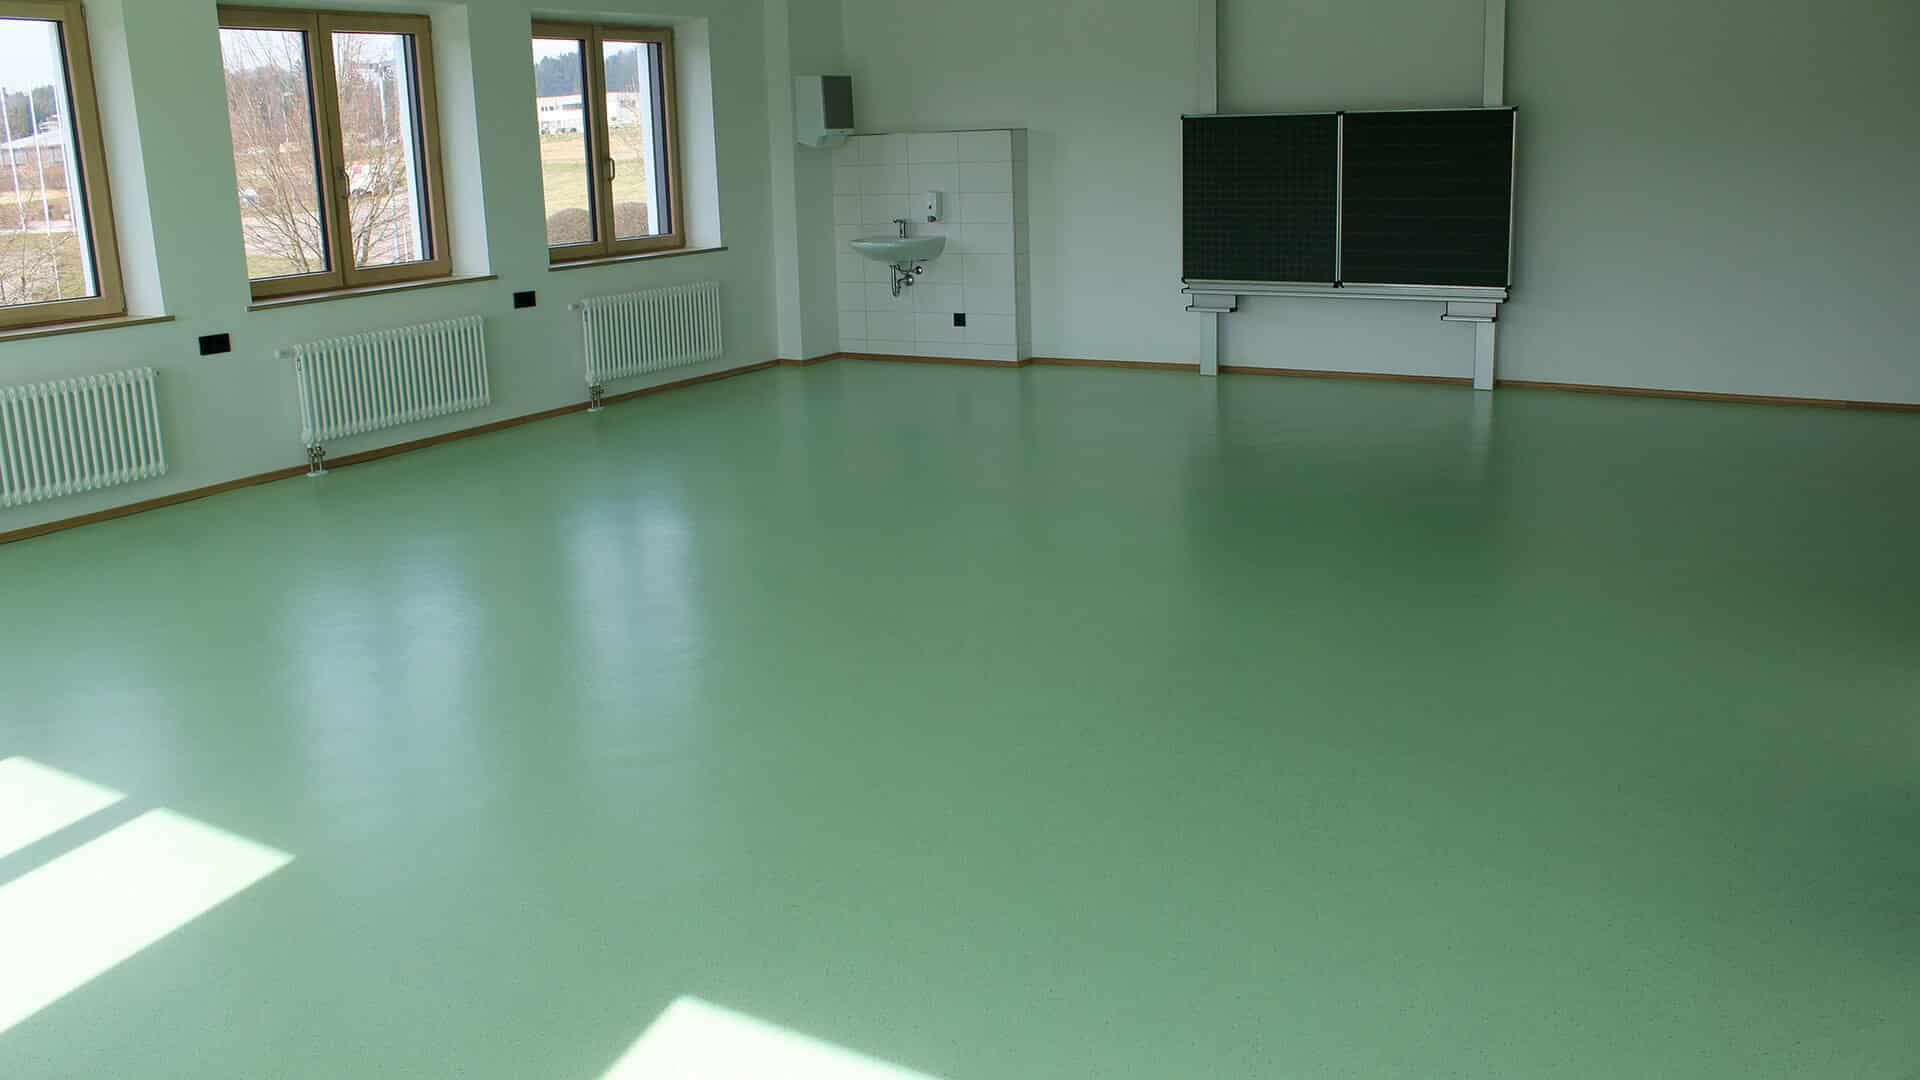 Renovierung Schule Klassenzimmer grüner Boden